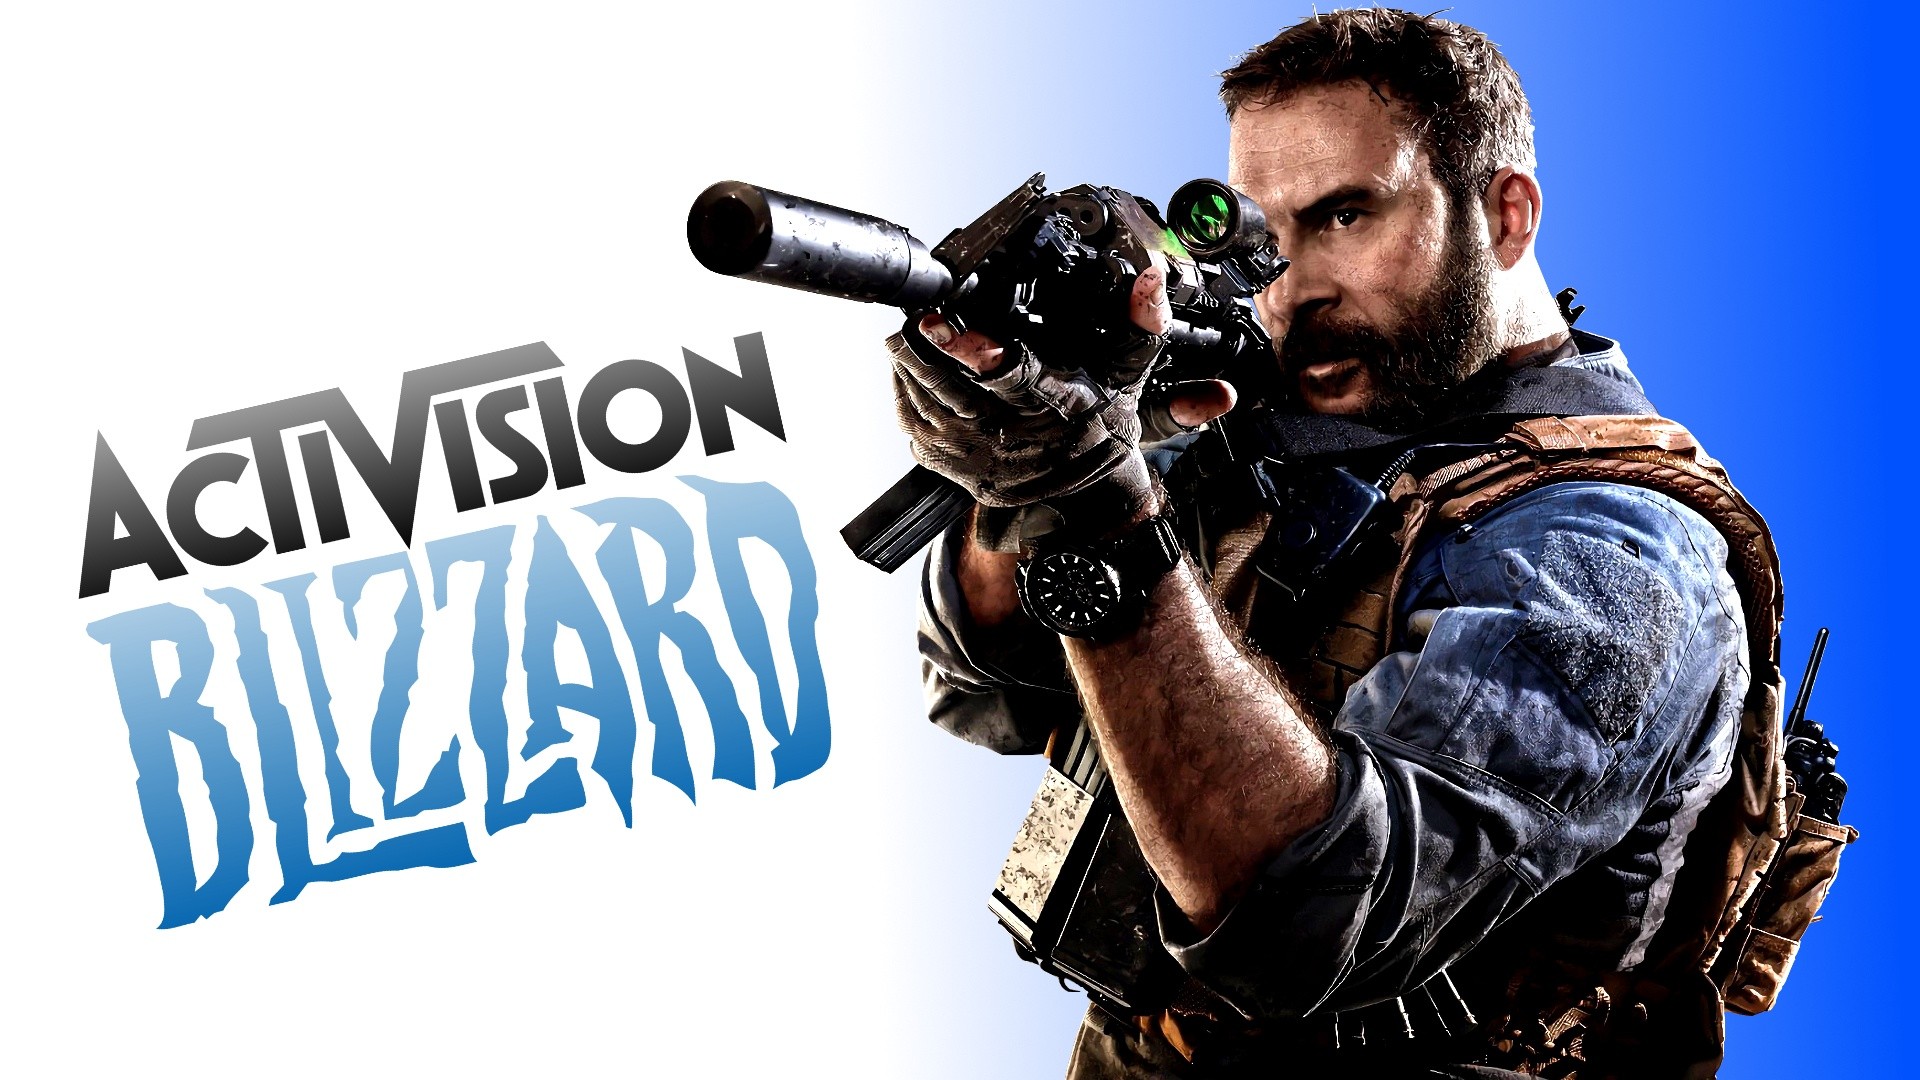 ماذا يقول خبراء صناعة الألعاب عن صفقة مايكروسوفت وActivision Blizzard؟